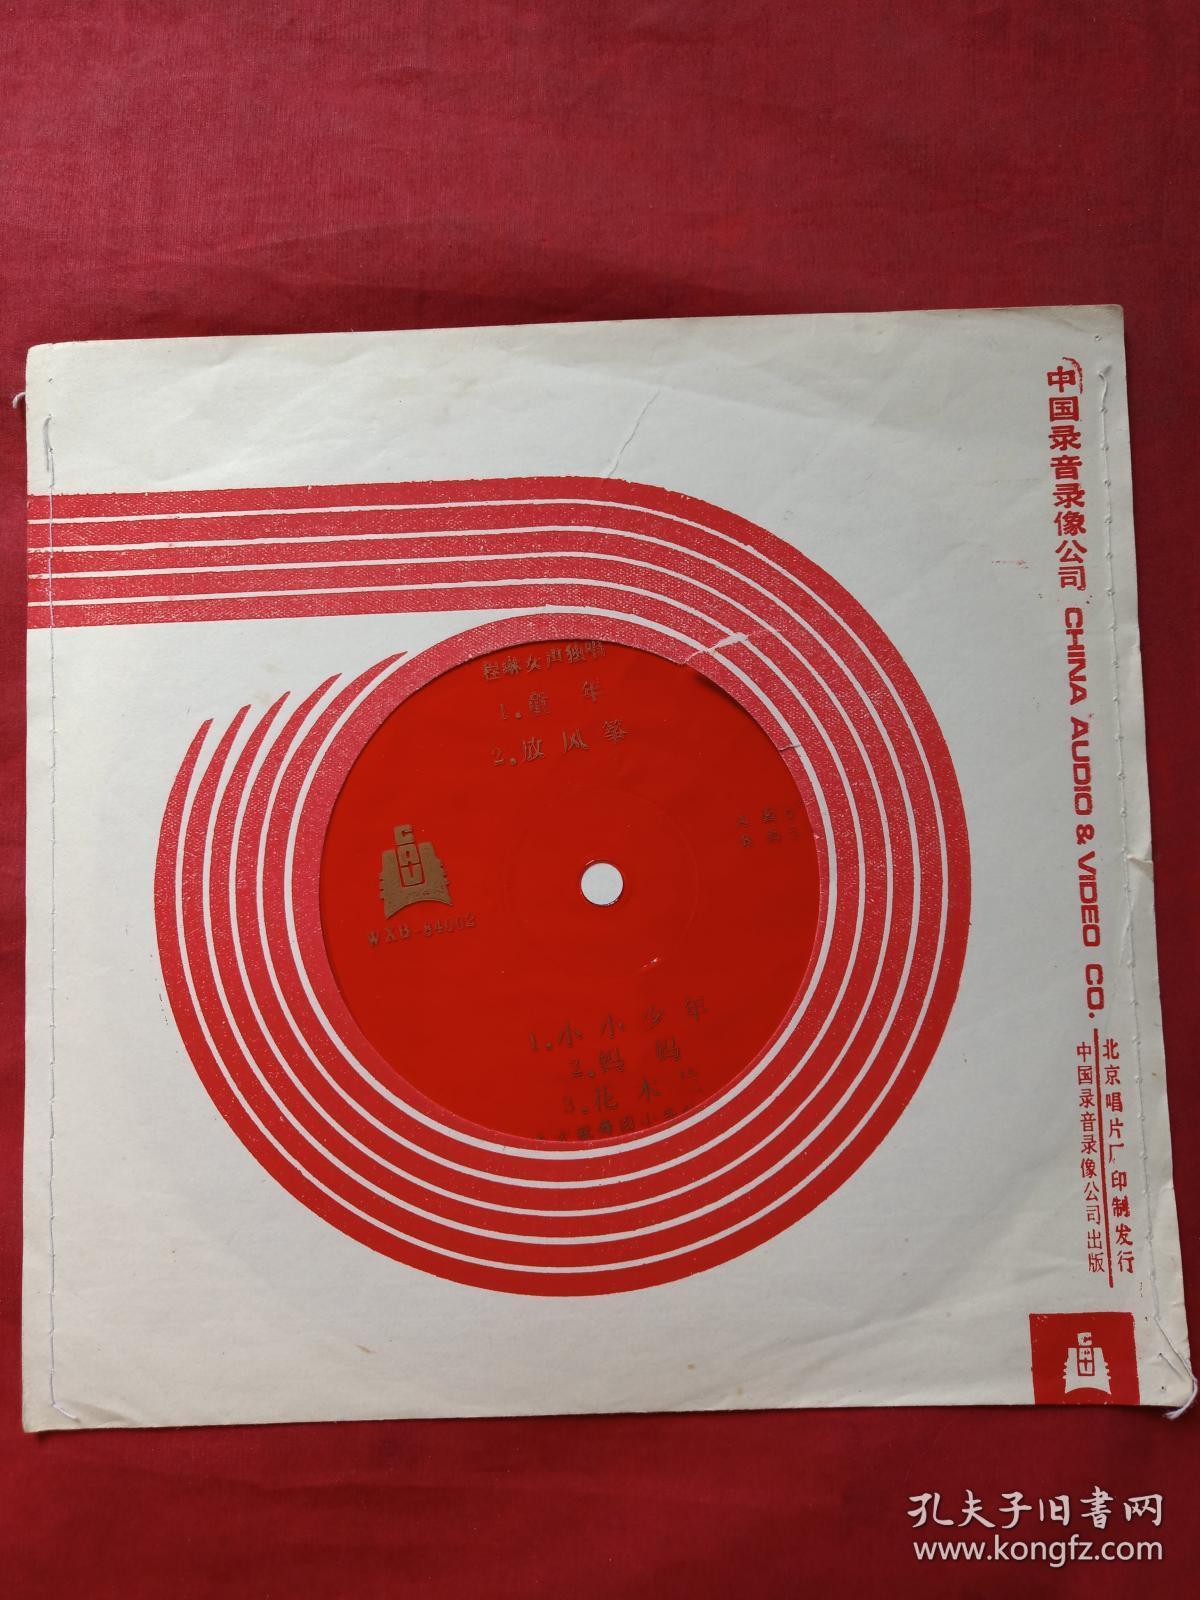 中国唱片：（红色薄膜唱片、WXM-84002、程琳女生独唱（童年、放风筝、小小少年、妈妈、花木兰、东方歌舞团小乐队伴奏）七八十年代出版